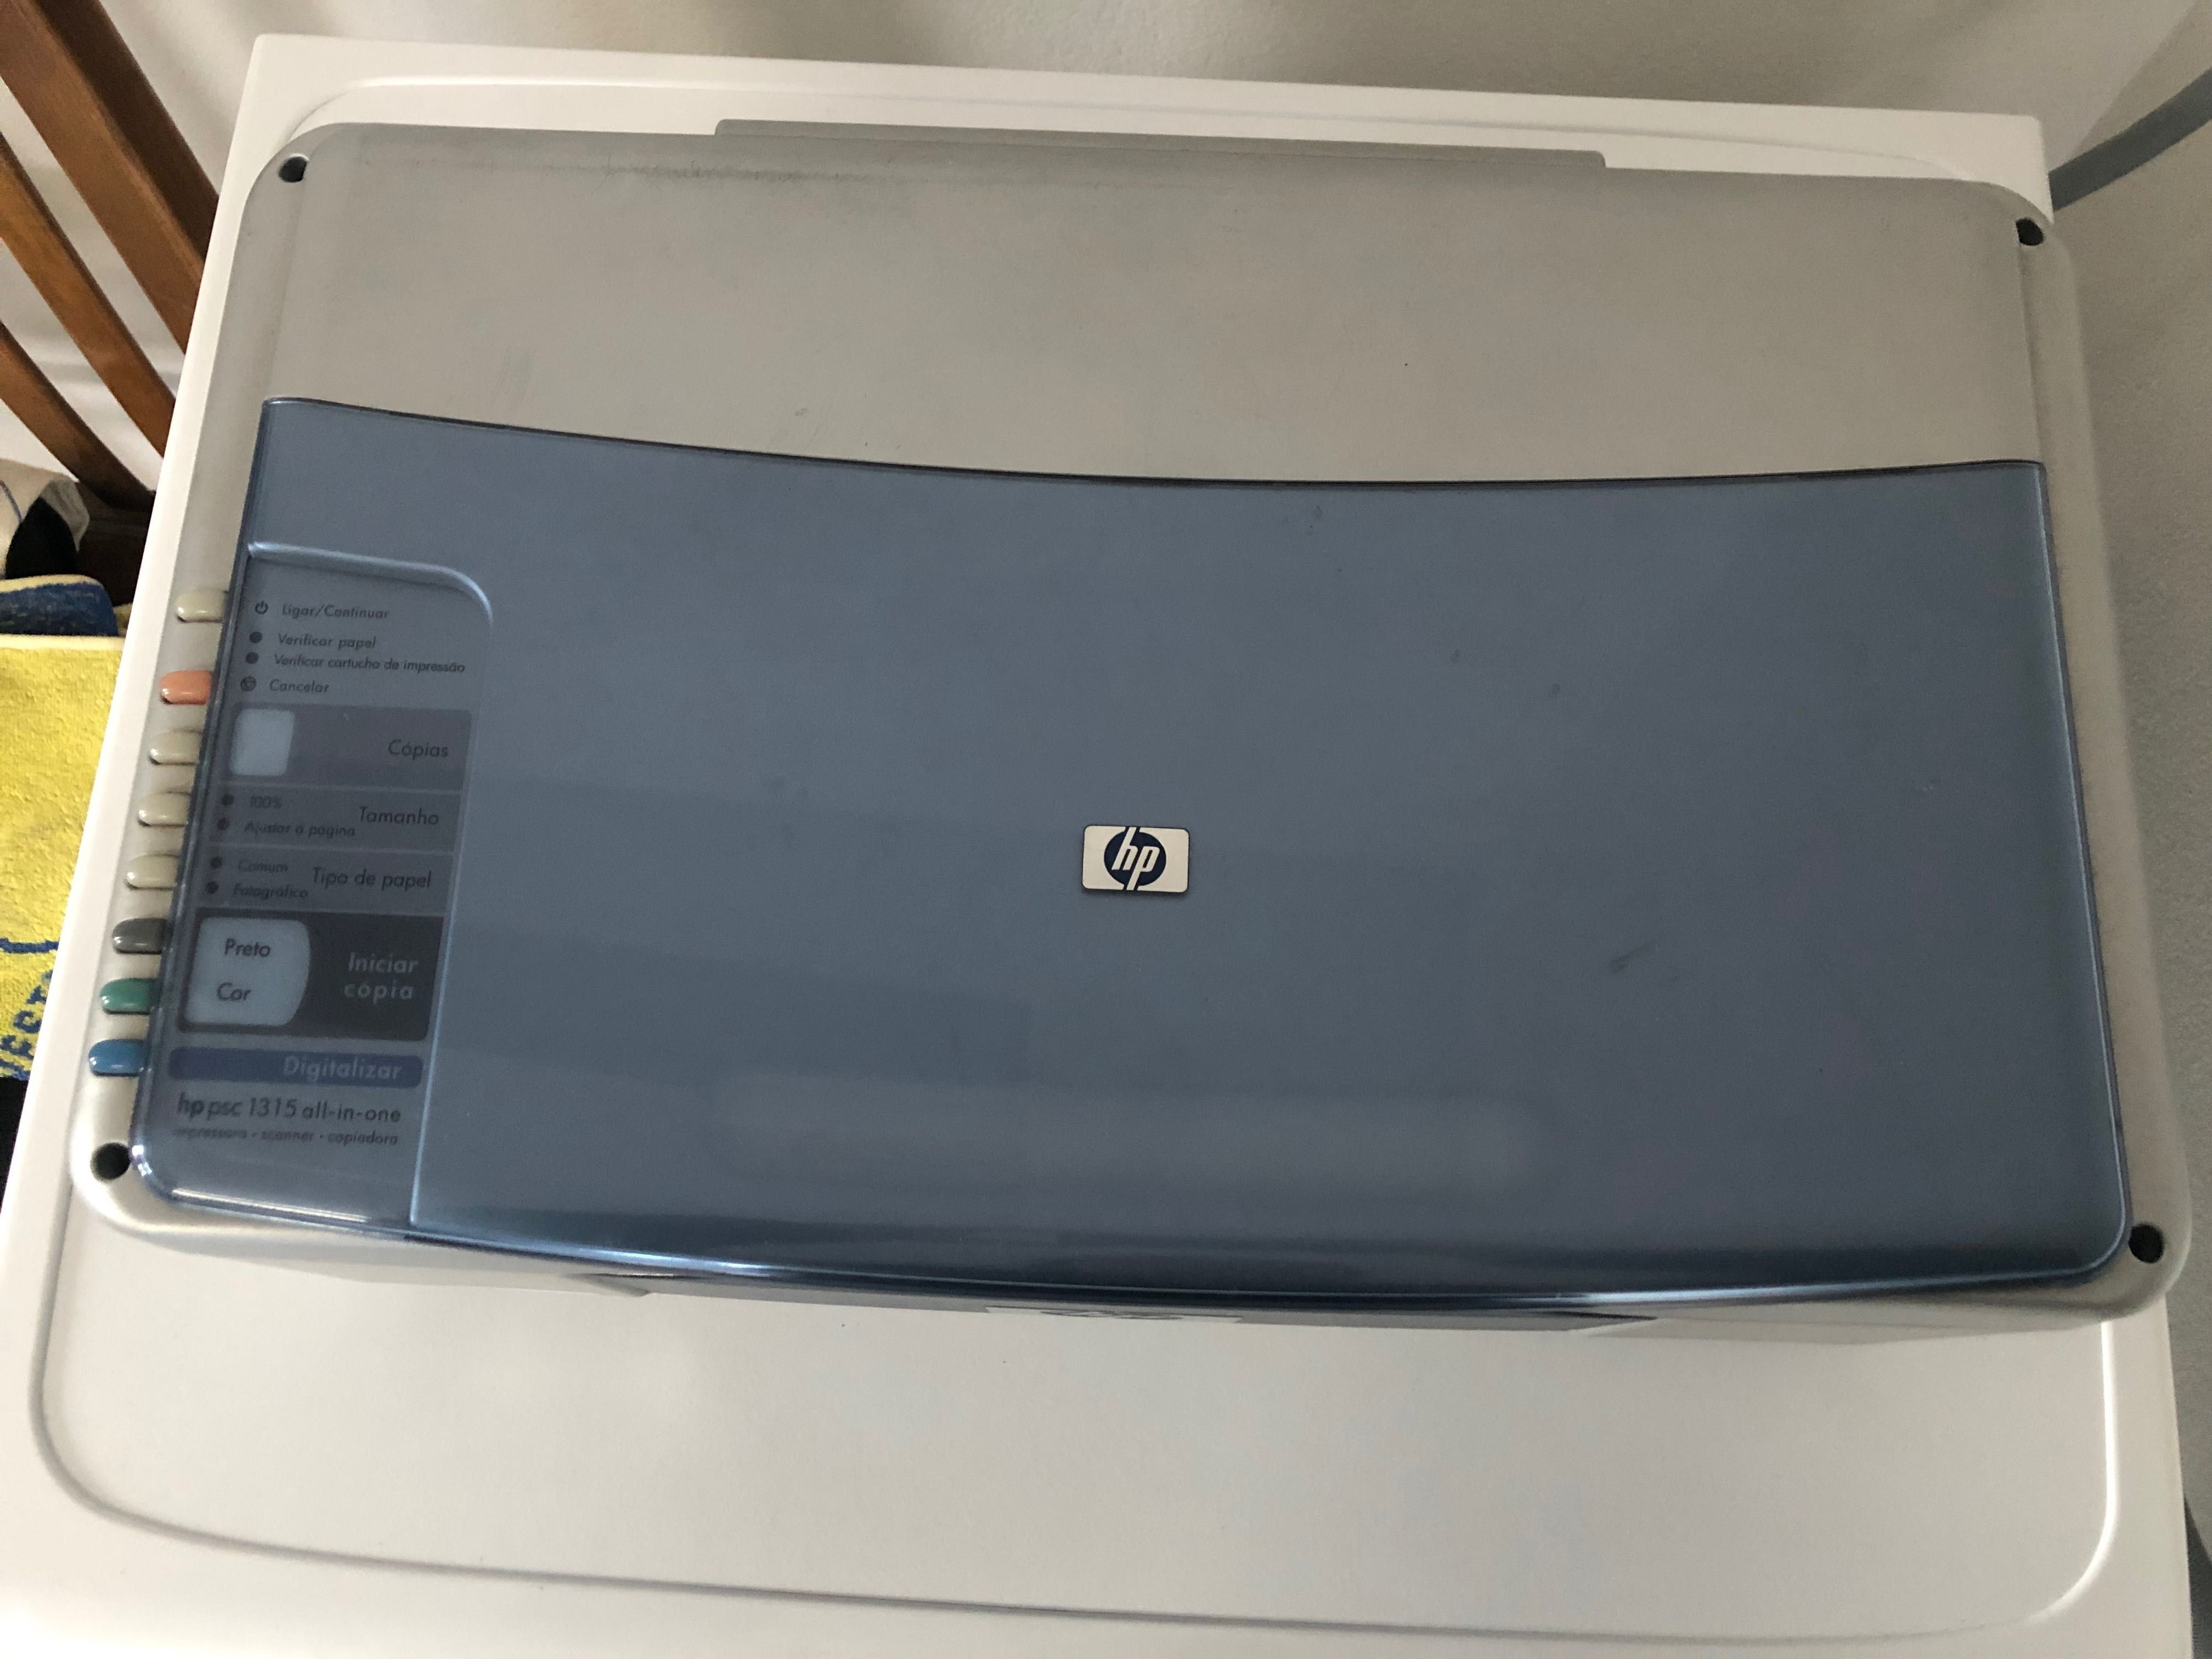 Impressora HP psc 1315 all-in-one